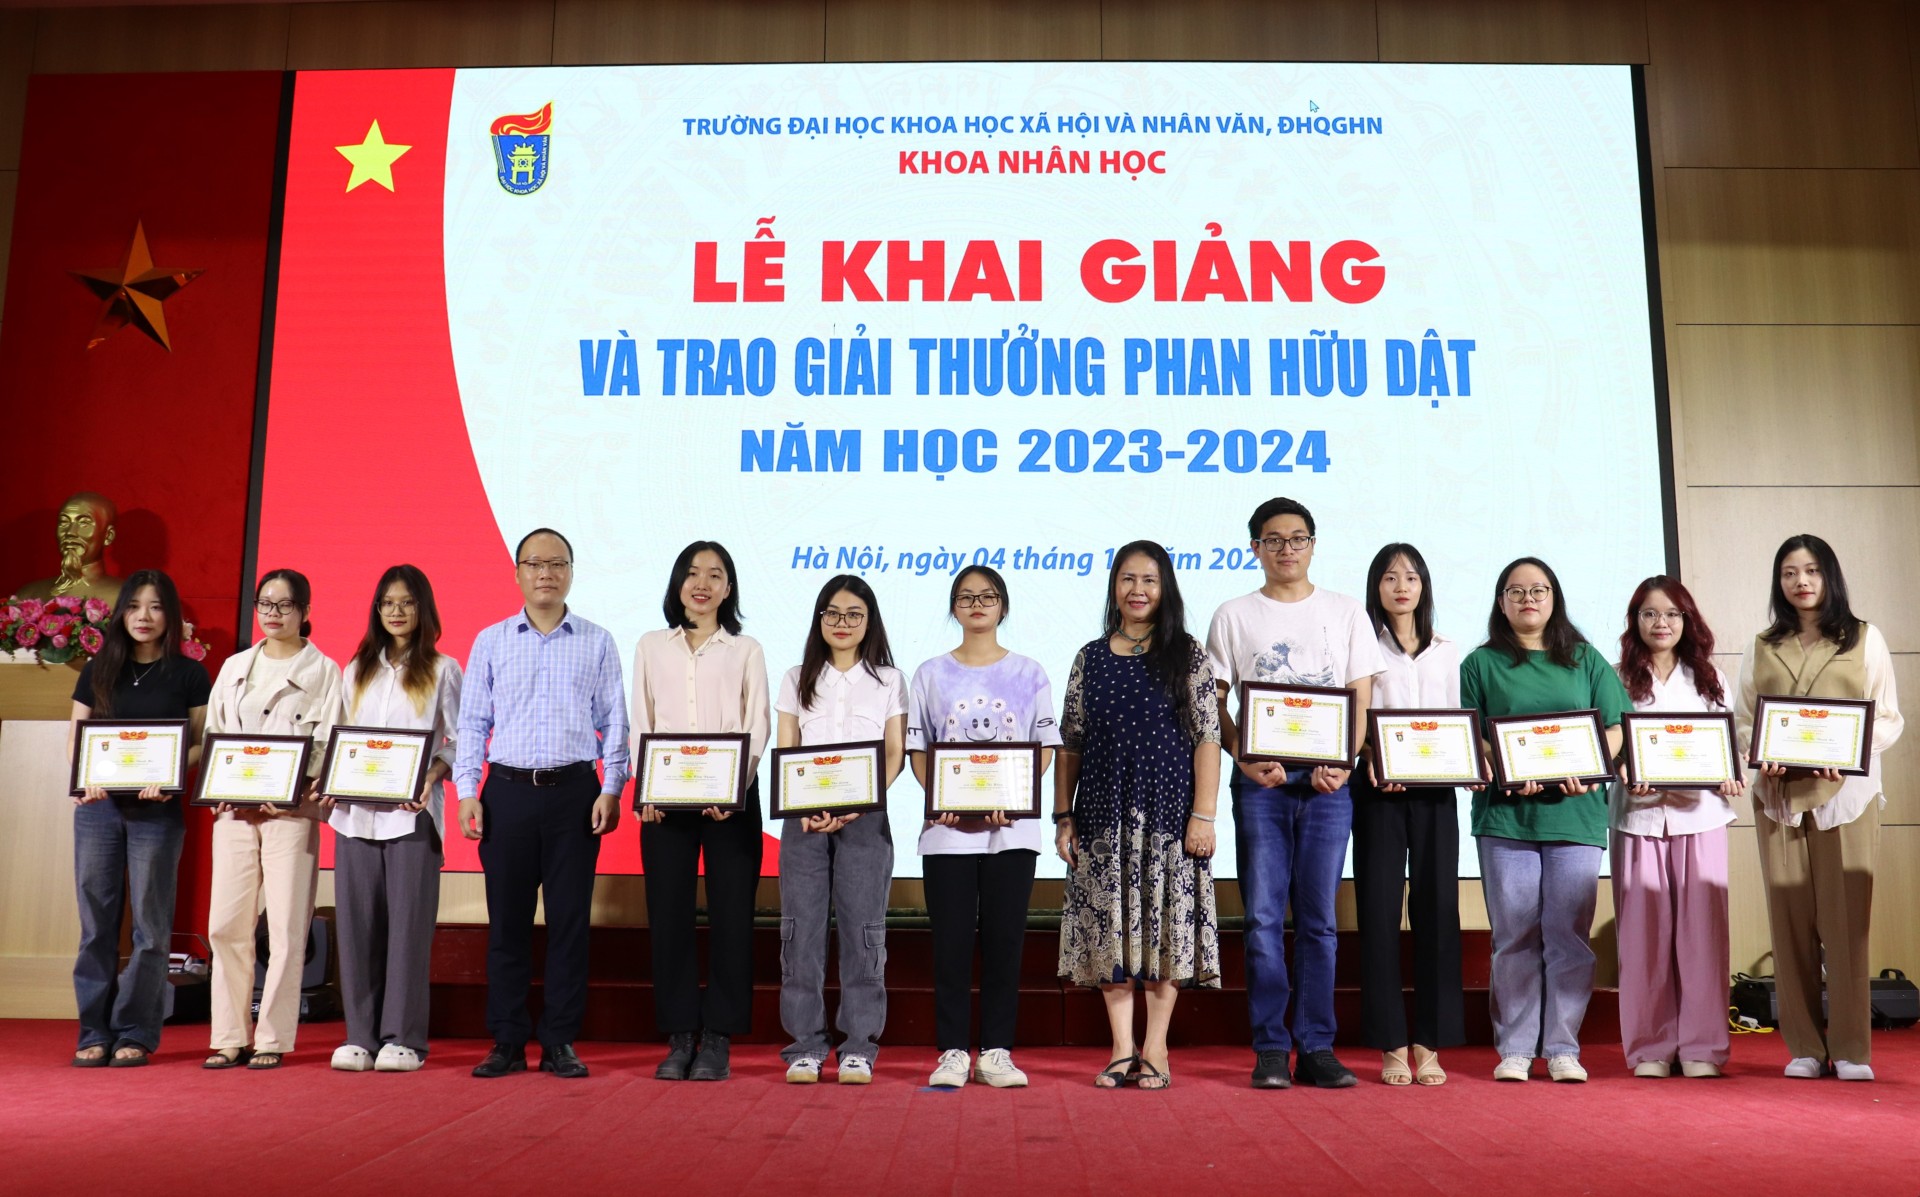 Trao Giải thưởng Phan Hữu Dật năm 2023 cho sinh viên và học viên cao học ngành Nhân học tại VNU- game đánh chắn online đổi thưởng
